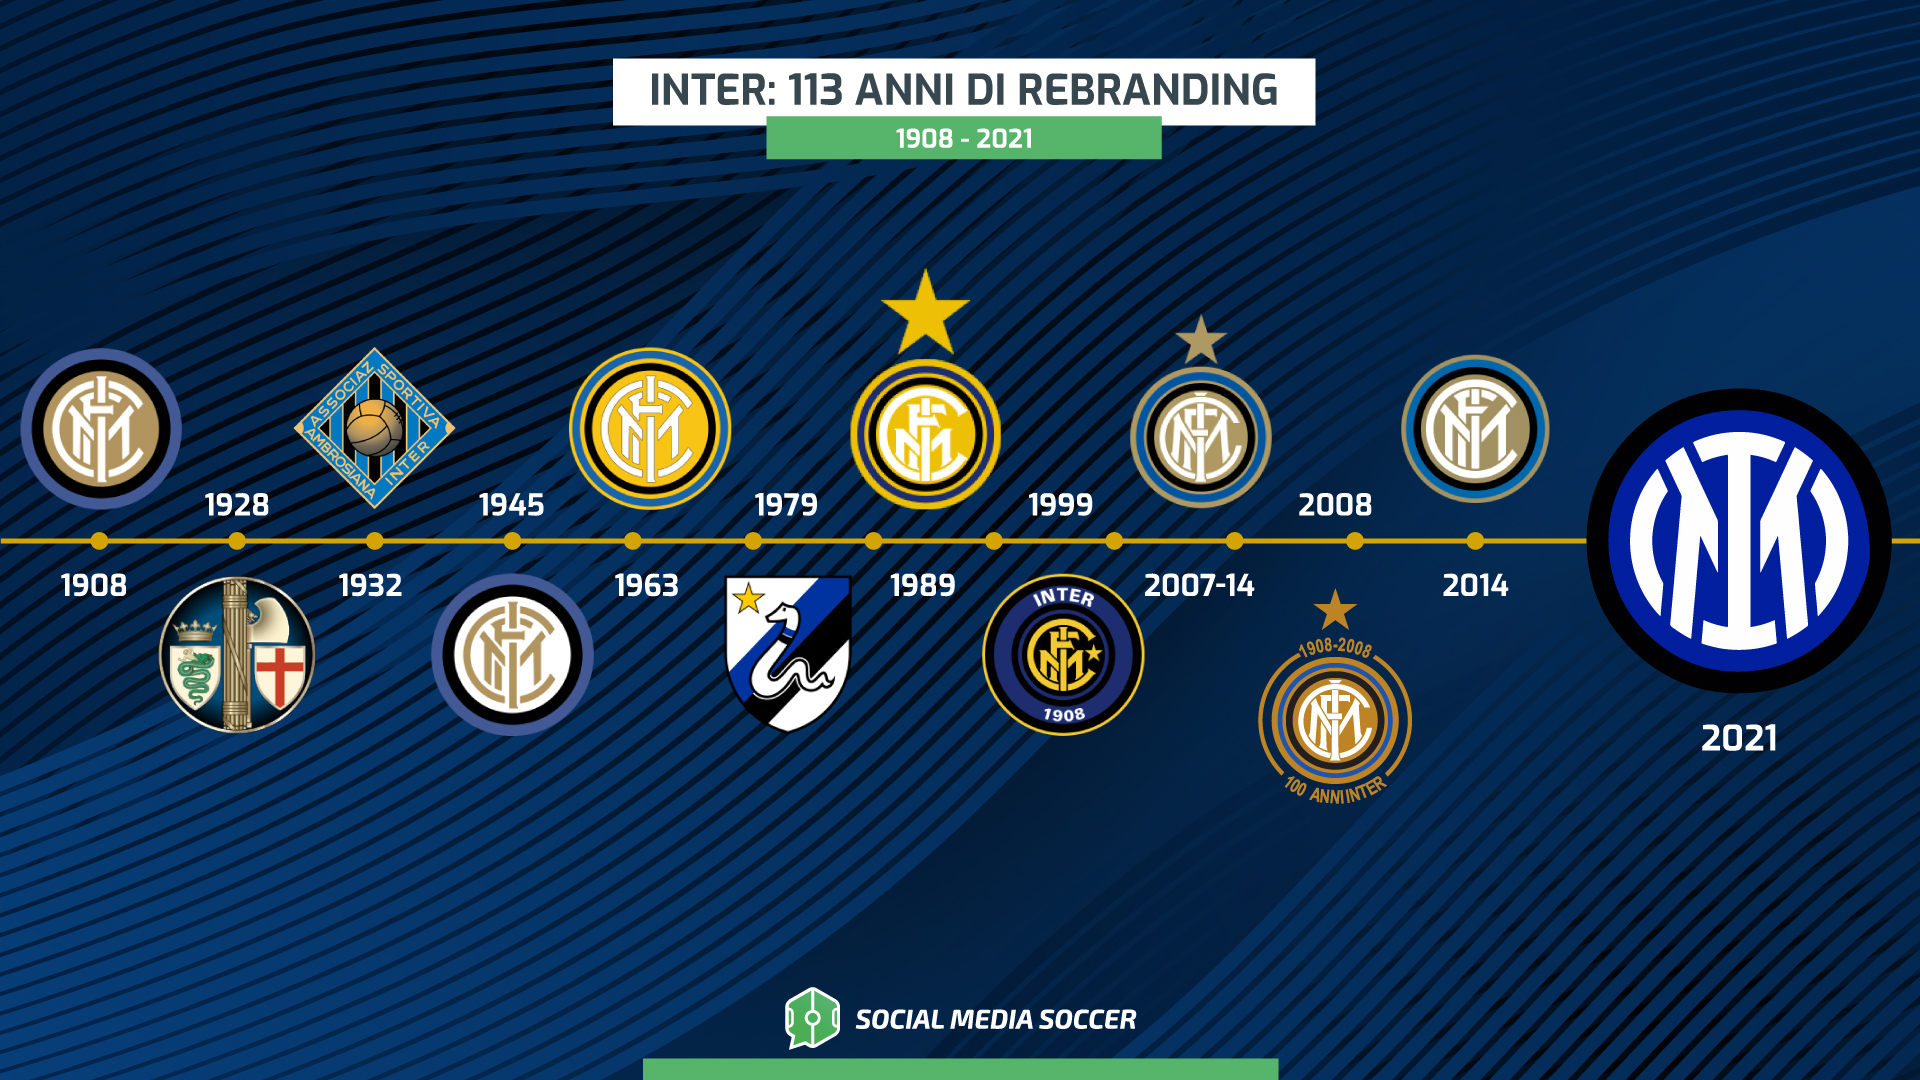 Ecco tutti i loghi della storia dell'Inter